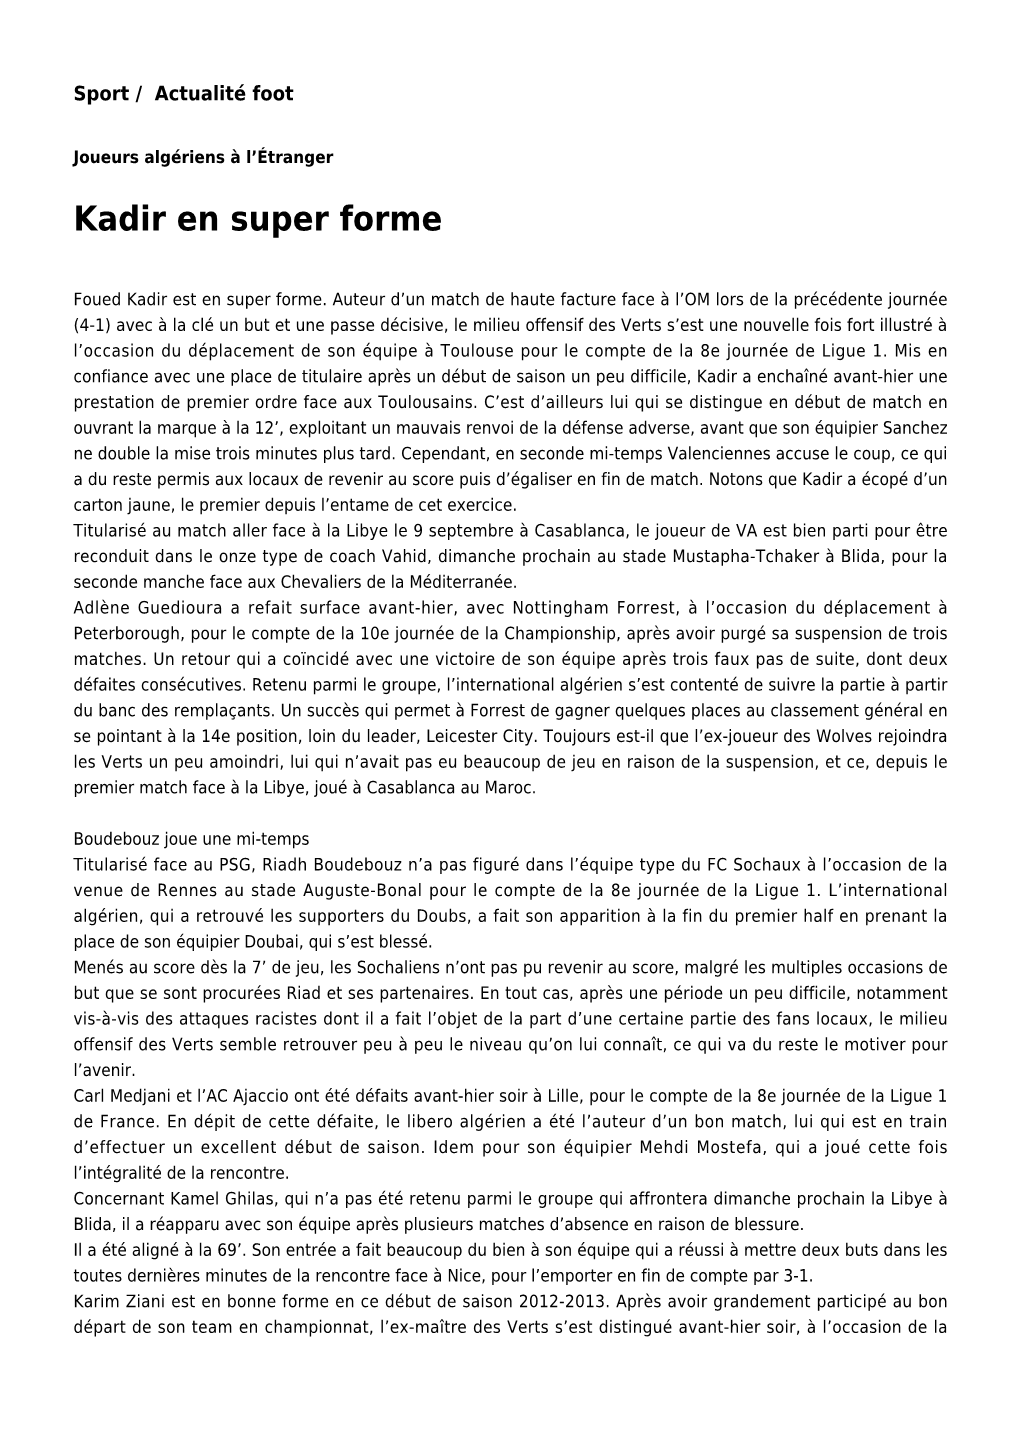 Kadir En Super Forme: Toute L'actualité Sur Liberte-Algerie.Com